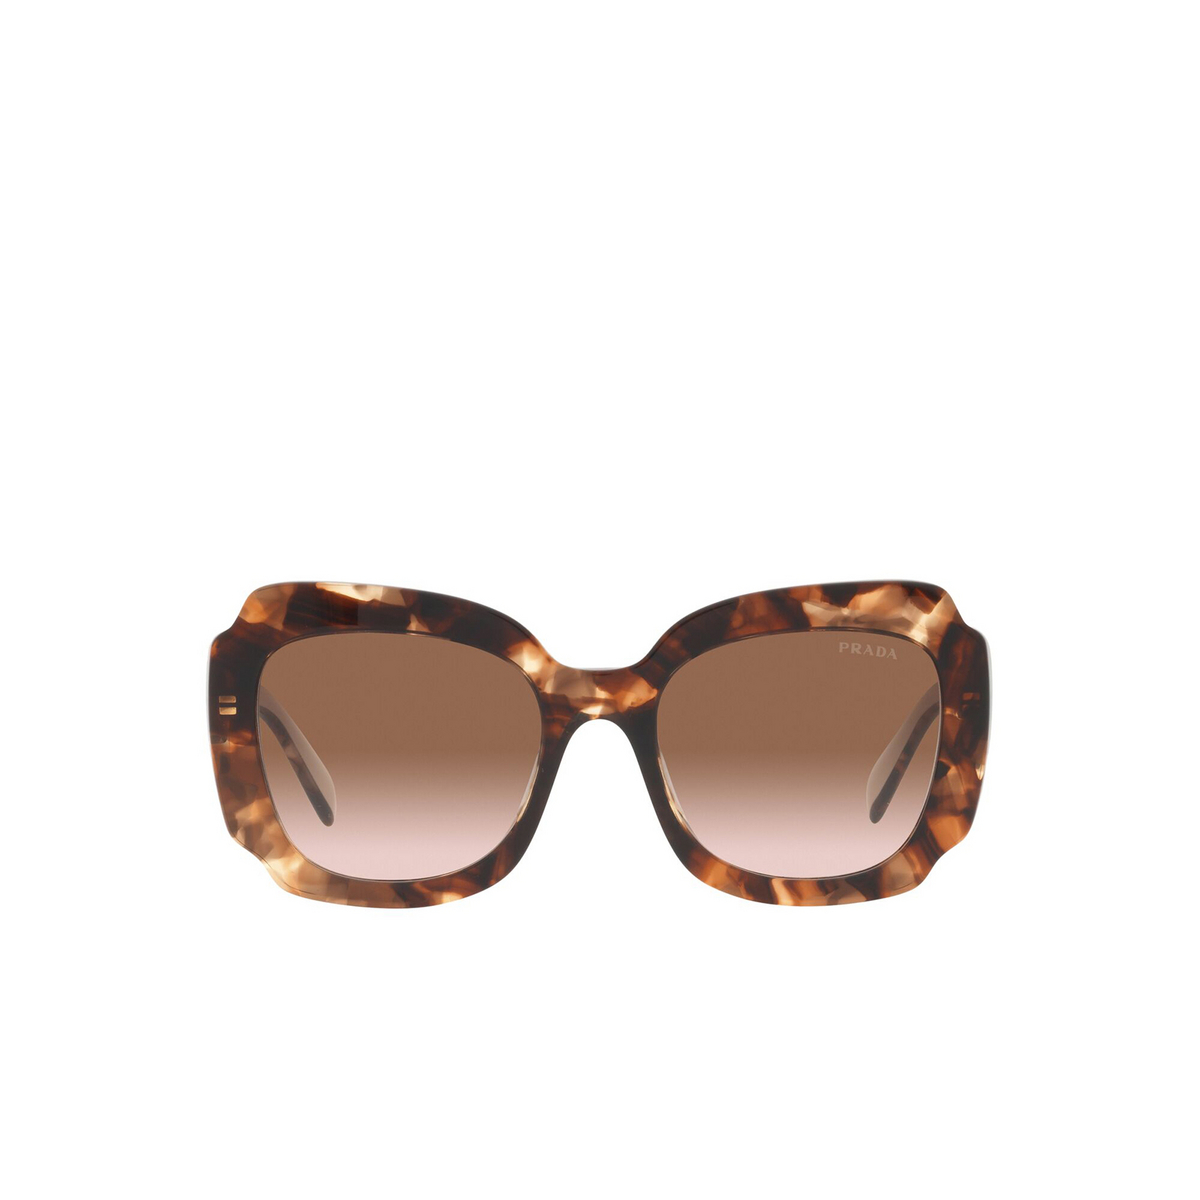 Prada® Irregular Sunglasses: PR 16YS color Havana 01R0A6 - front view.